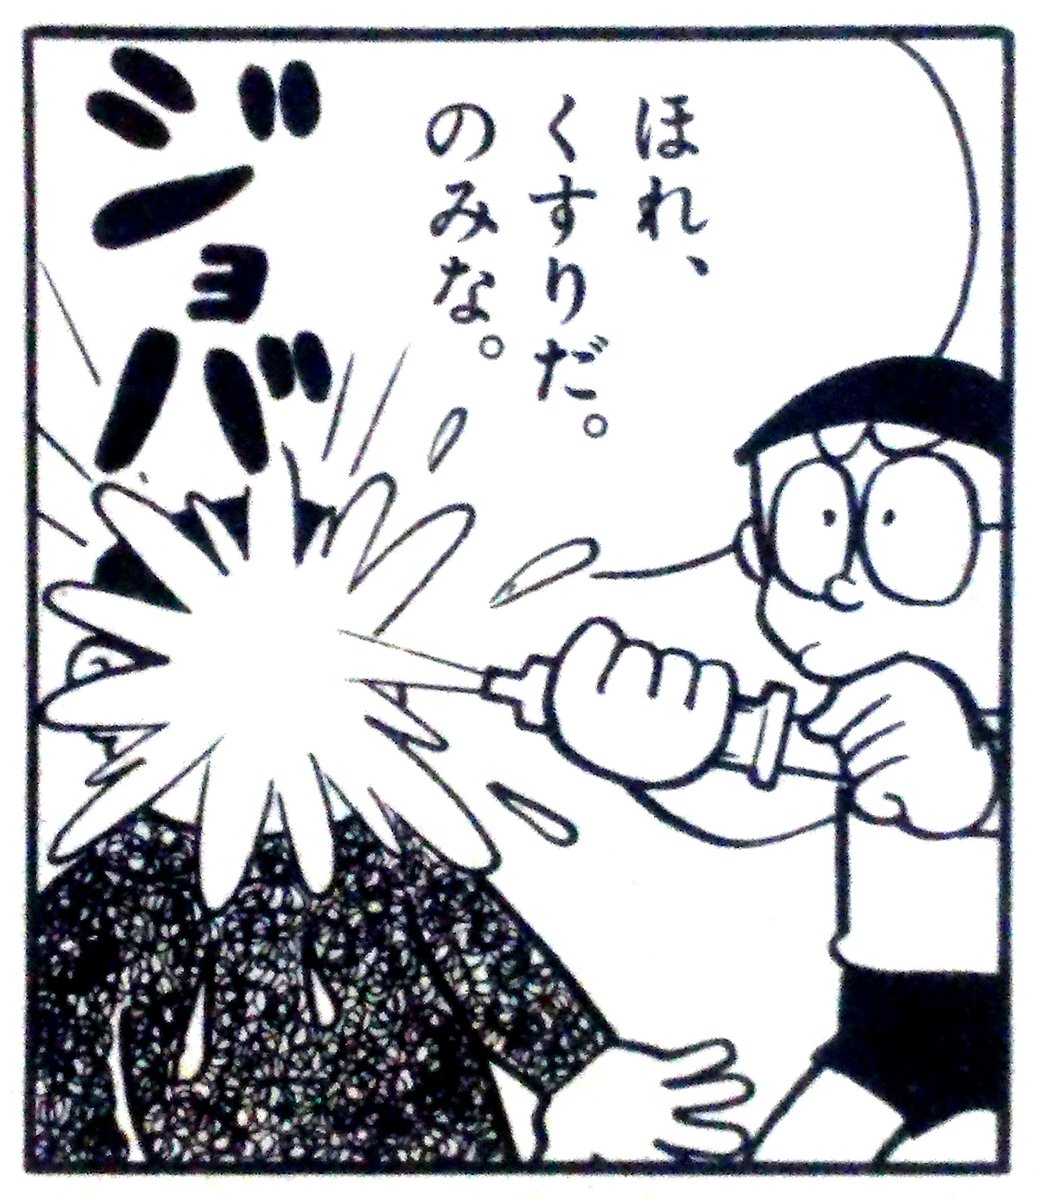 前田尋之 パーフェクトカタログシリーズ好評発売中 در توییتر 何気にシュールなコマが多い ドラえもん 画像一枚でその漫画を読みたくさせてみろ